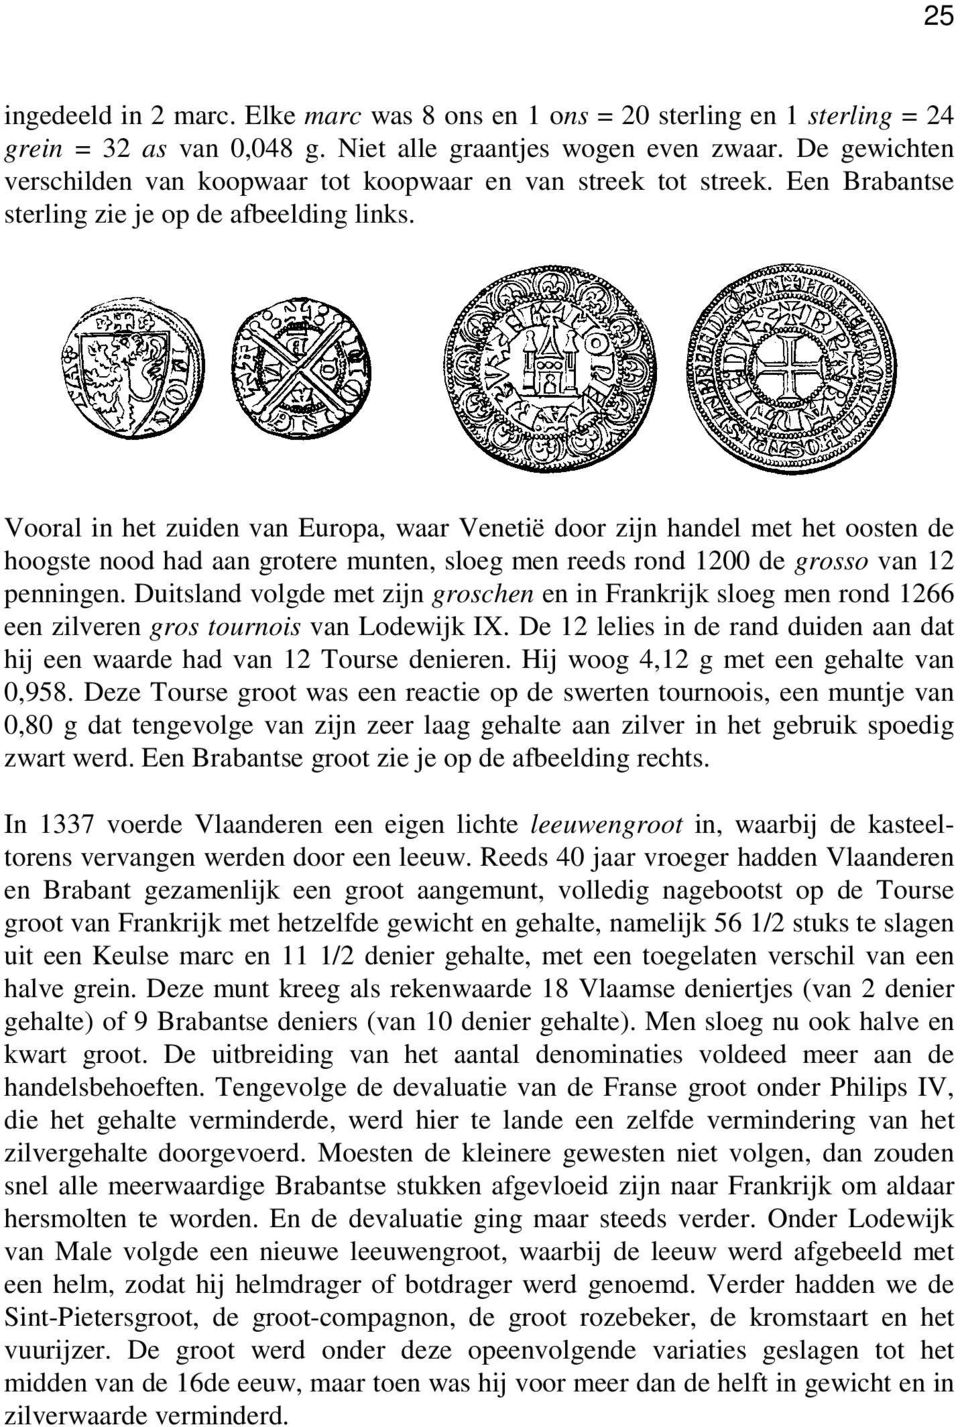 Vooral in het zuiden van Europa, waar Venetië door zijn handel met het oosten de hoogste nood had aan grotere munten, sloeg men reeds rond 1200 de grosso van 12 penningen.